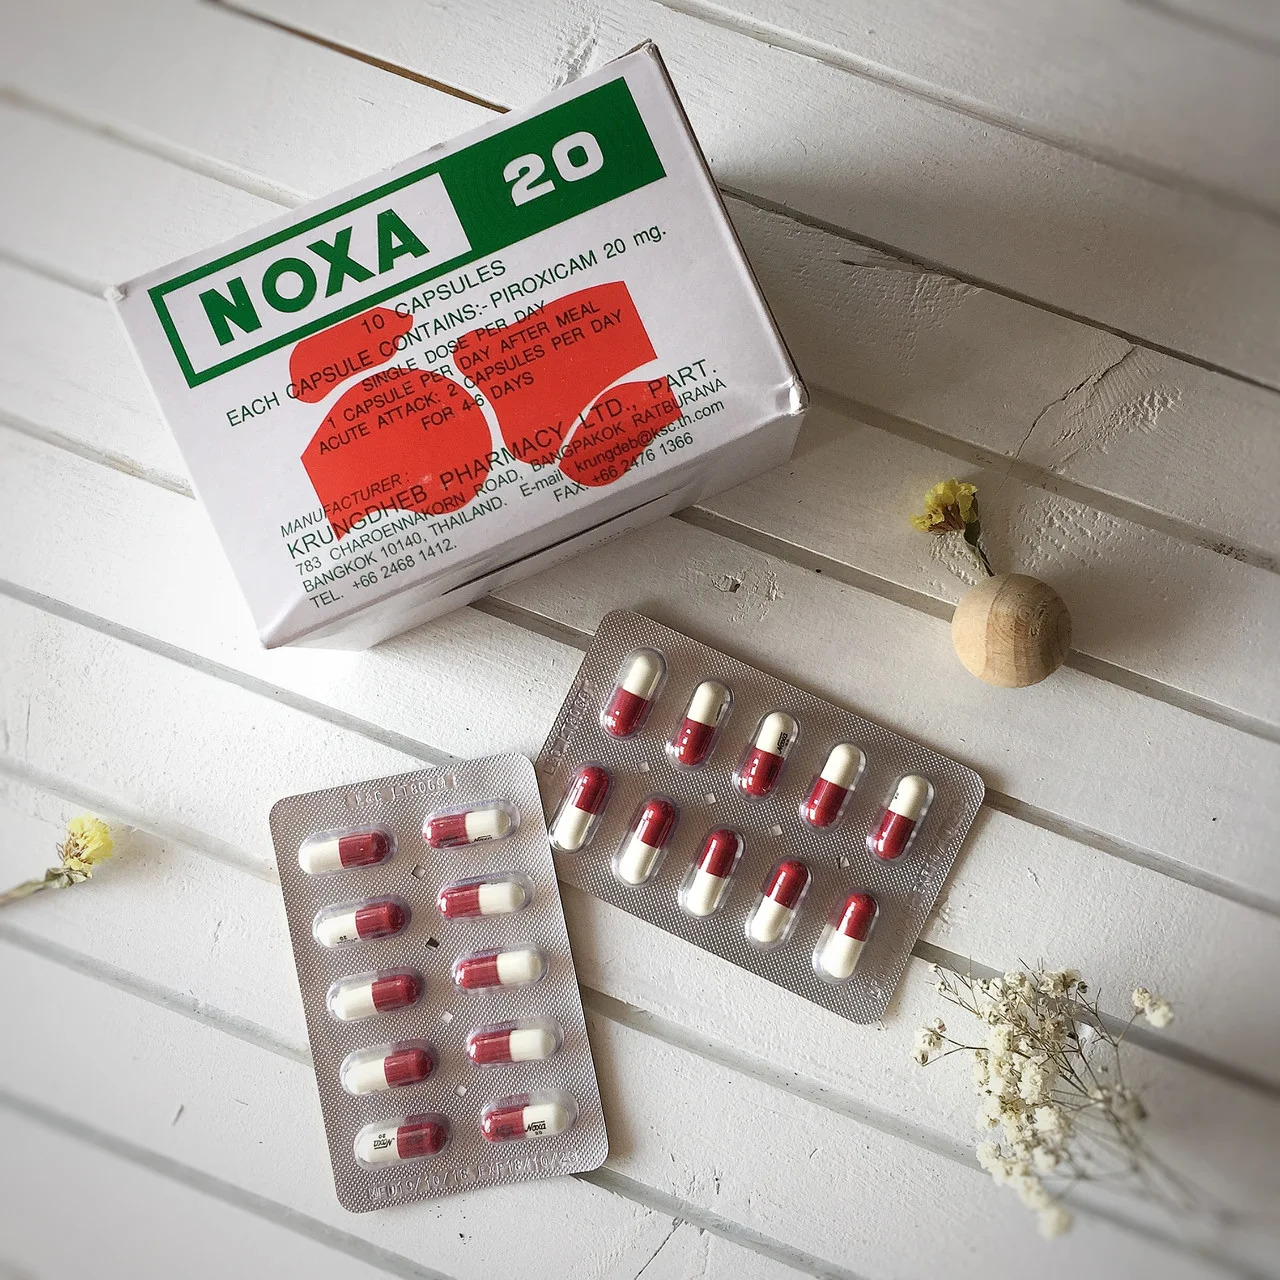 Капсулы для лечения позвоночника и суставов из Таиланда NOXA 20 (НОКСА 20) 10 капсул.